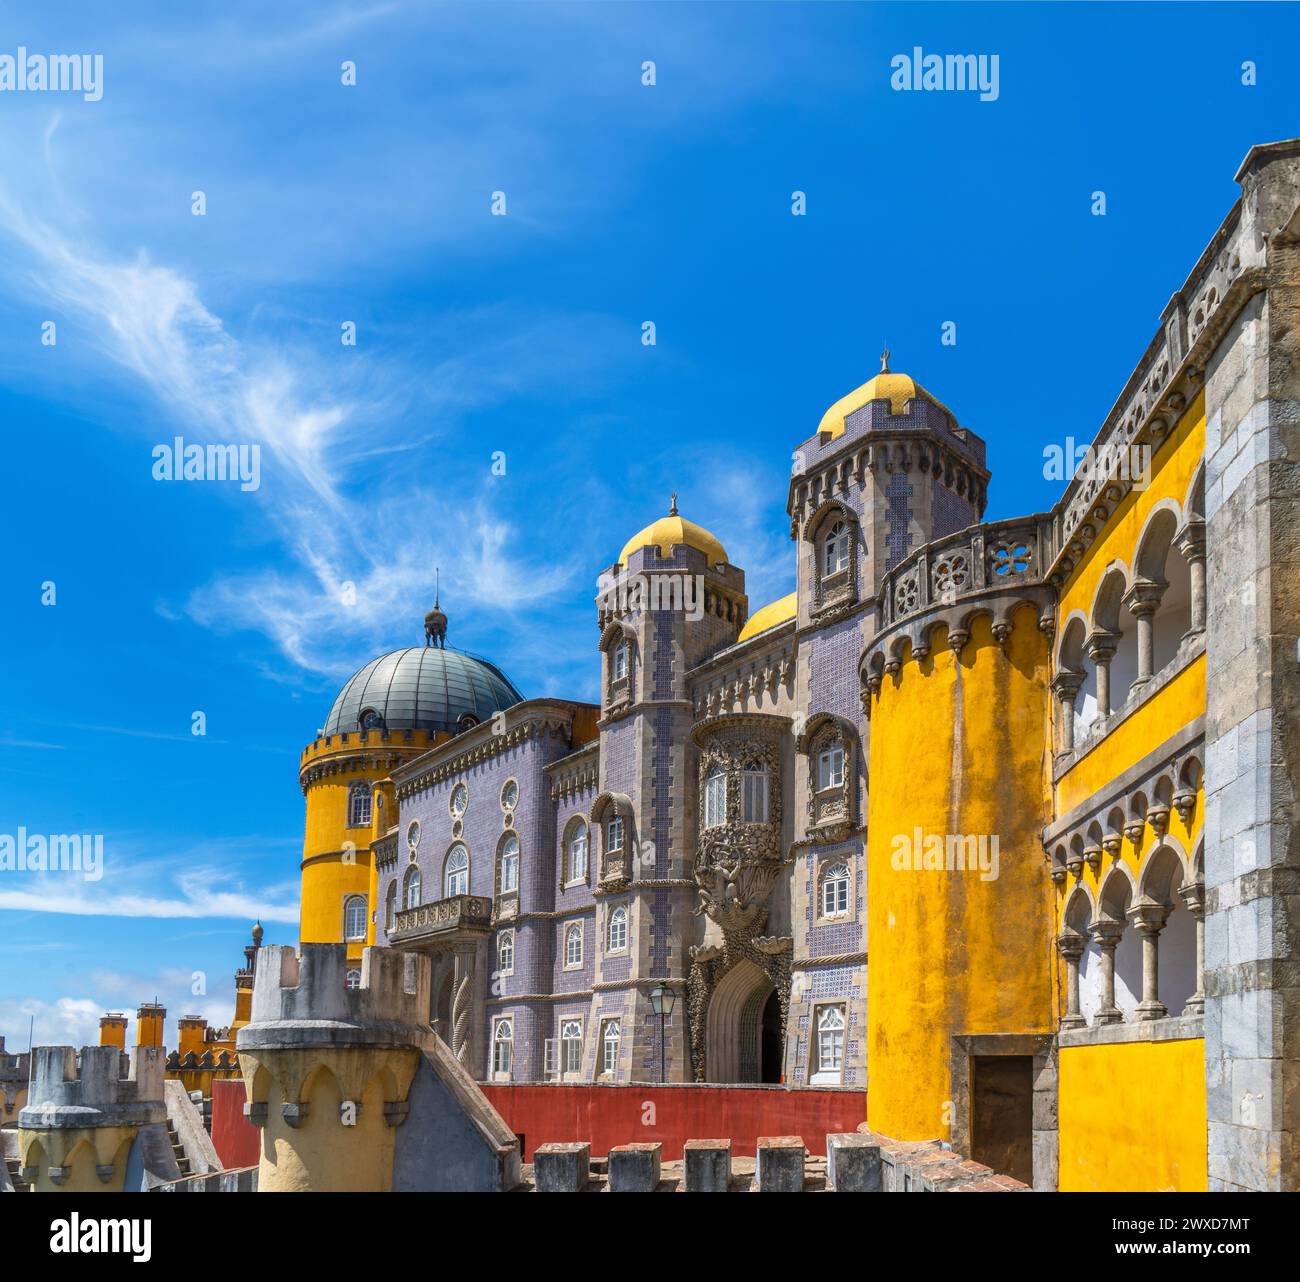 Vue extérieure du Palais de Pena avec des murs et des mosaïques jaunes et rouges sur le mur et les murs fortifiés, sous un ciel bleu ensoleillé. Sintra. Portugal. Banque D'Images